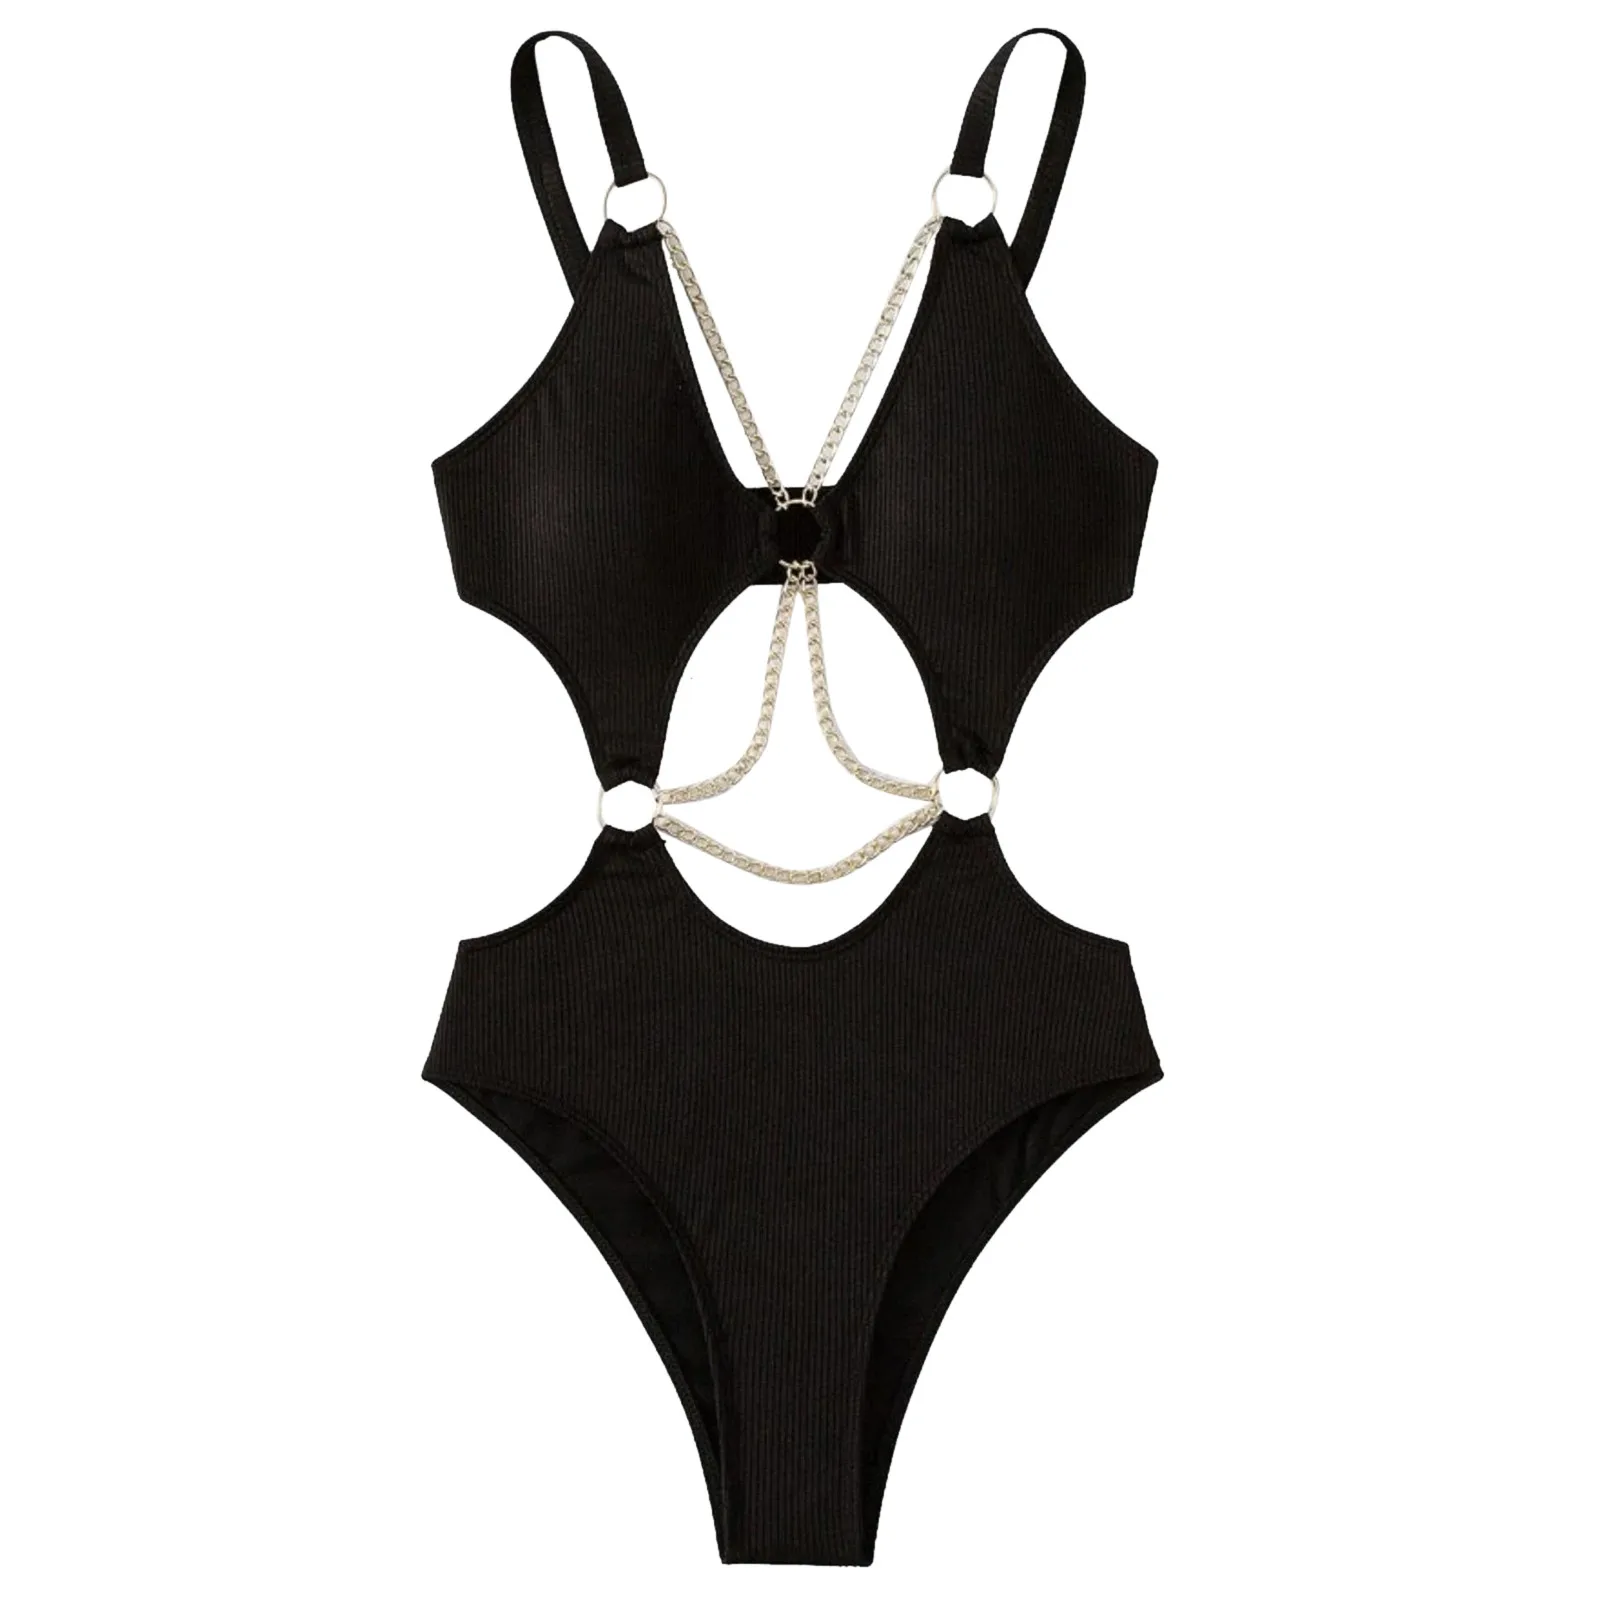 Sieviešu Bikini viengabala Kostīmi Metāla Ķēdes Dobi Ārā Tīru Krāsu Push Up peldkostīms Svaigu Black Spilvenu Seksīgi Peldkostīmi